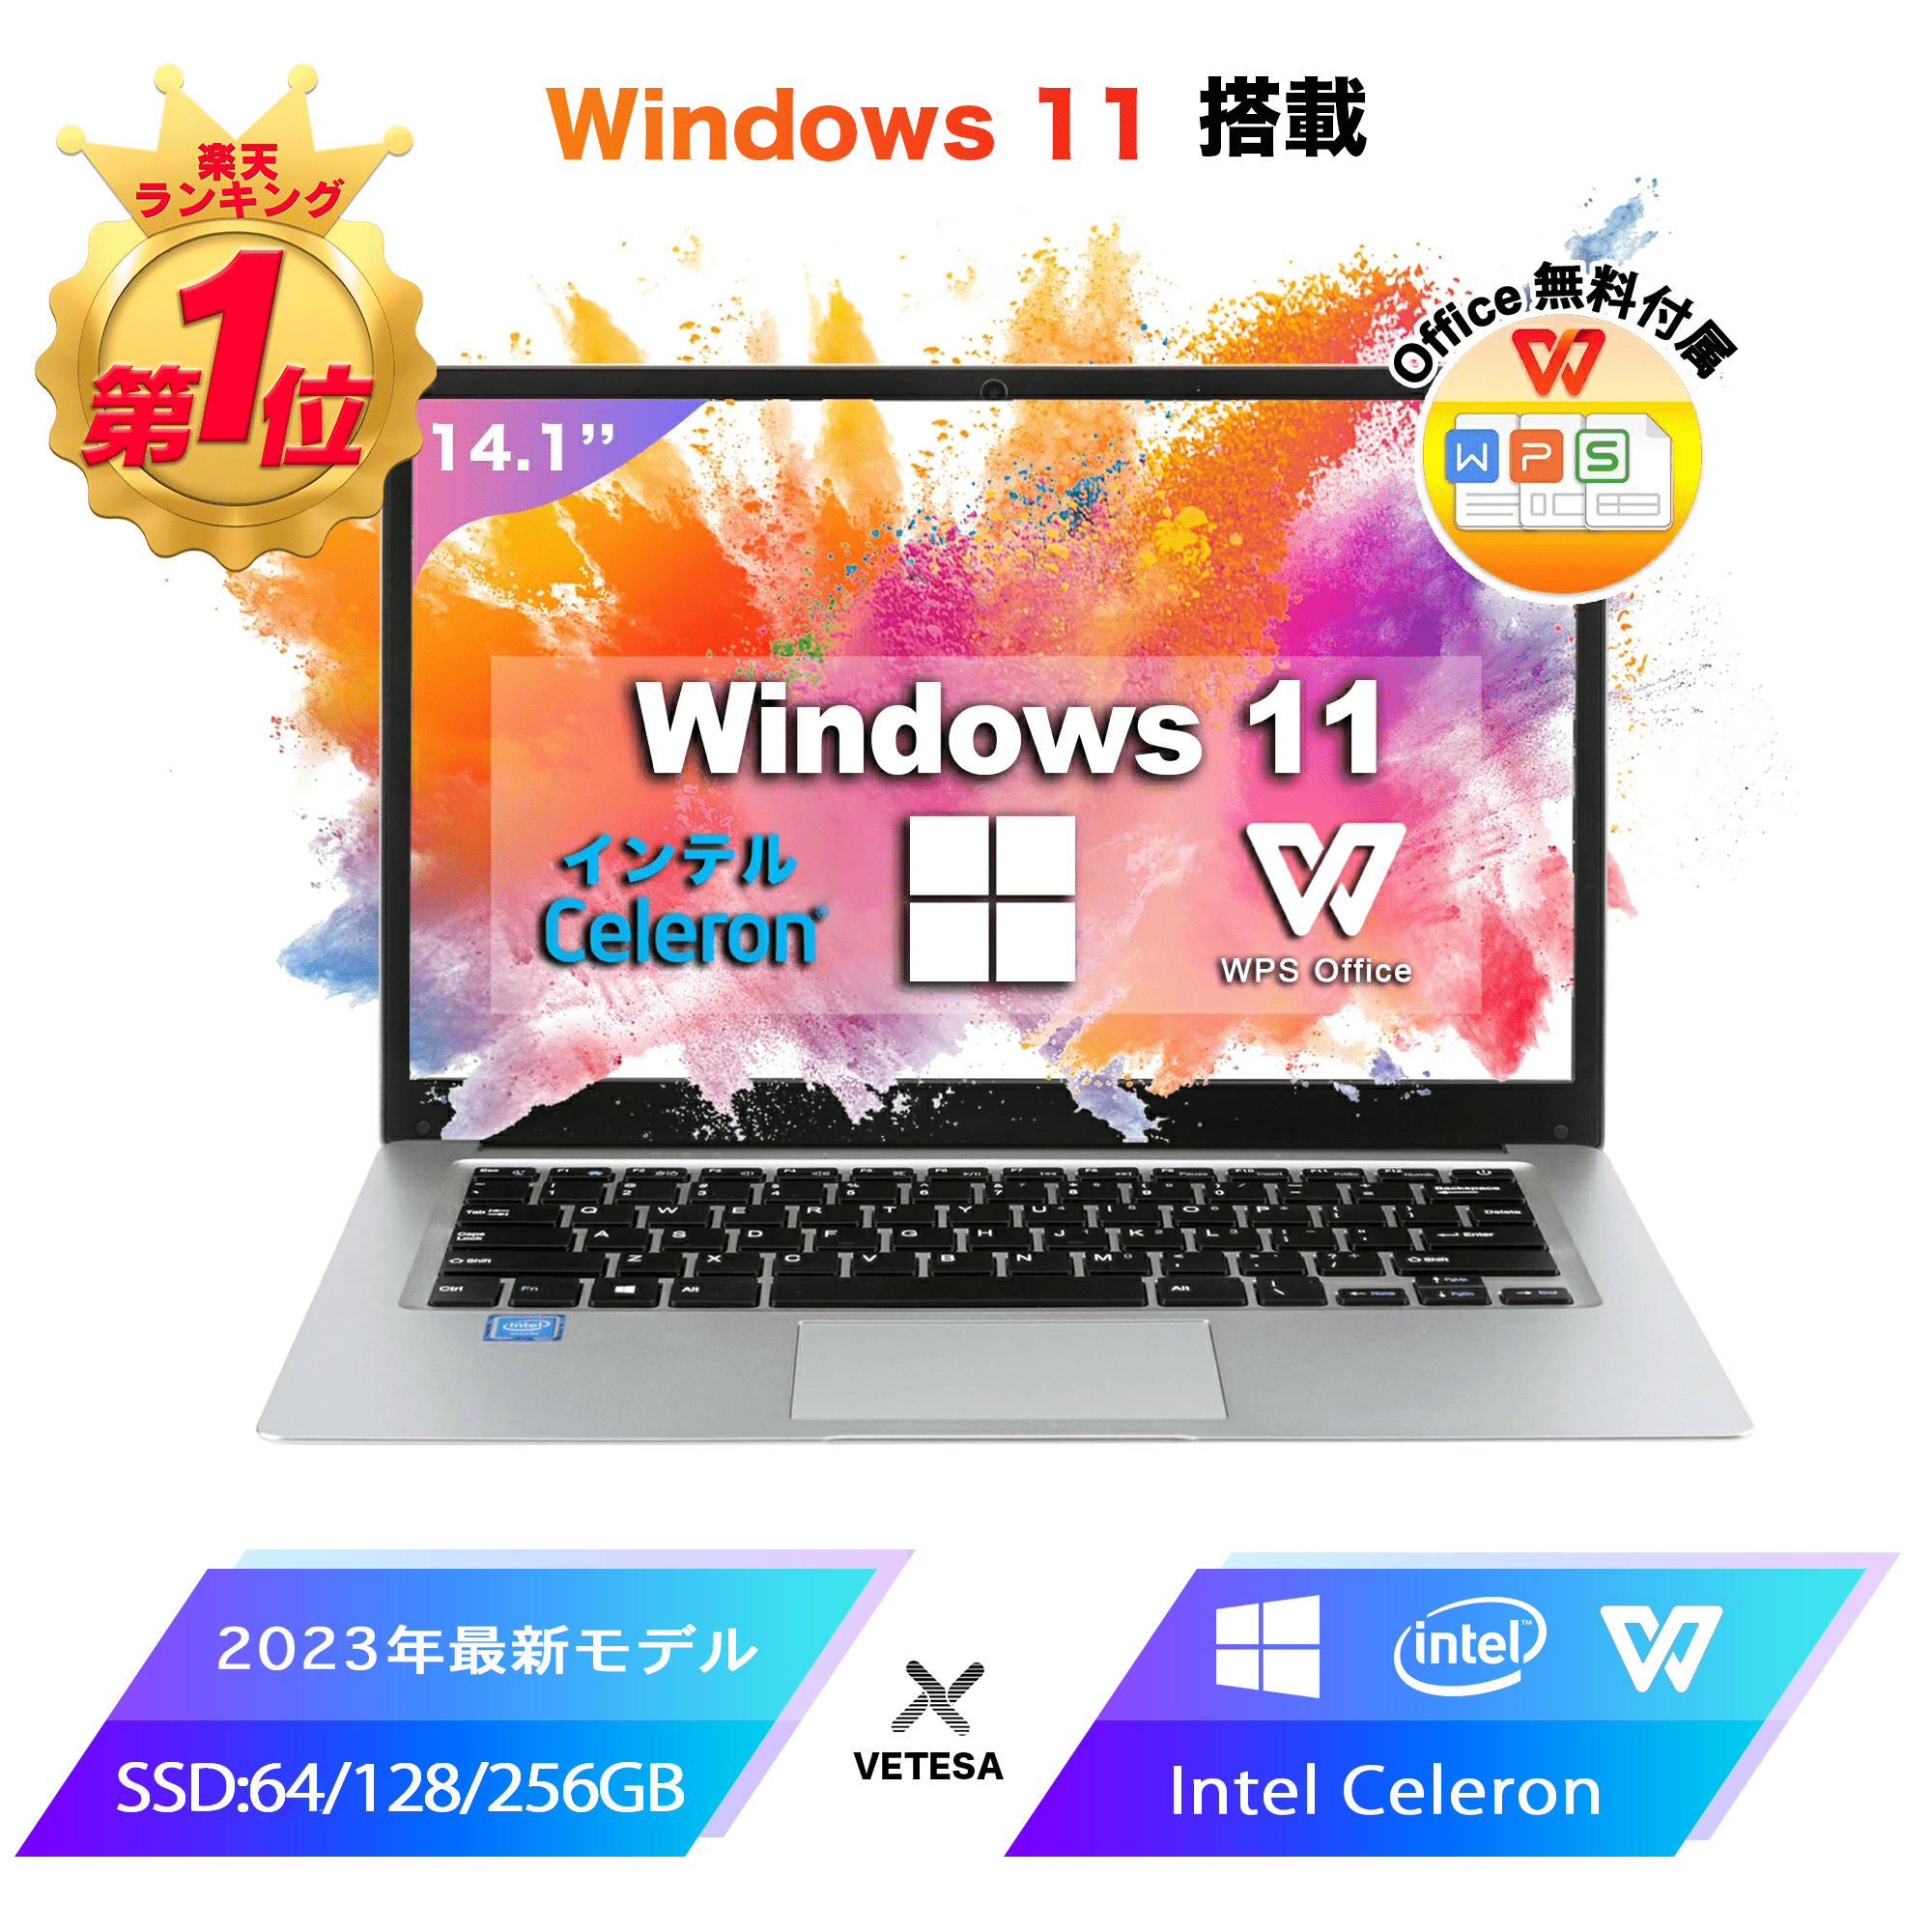  ノートパソコン パソコン 新品 Office付き 初心者向け Windows11 初期設定済 Webカメラ zoom 日本語キーボード 14.1型 Intel Celeron メモリ6GB SSD HD液晶大容量バッテリー Wi-Fiテレワーク応援 在宅勤務 学生向け